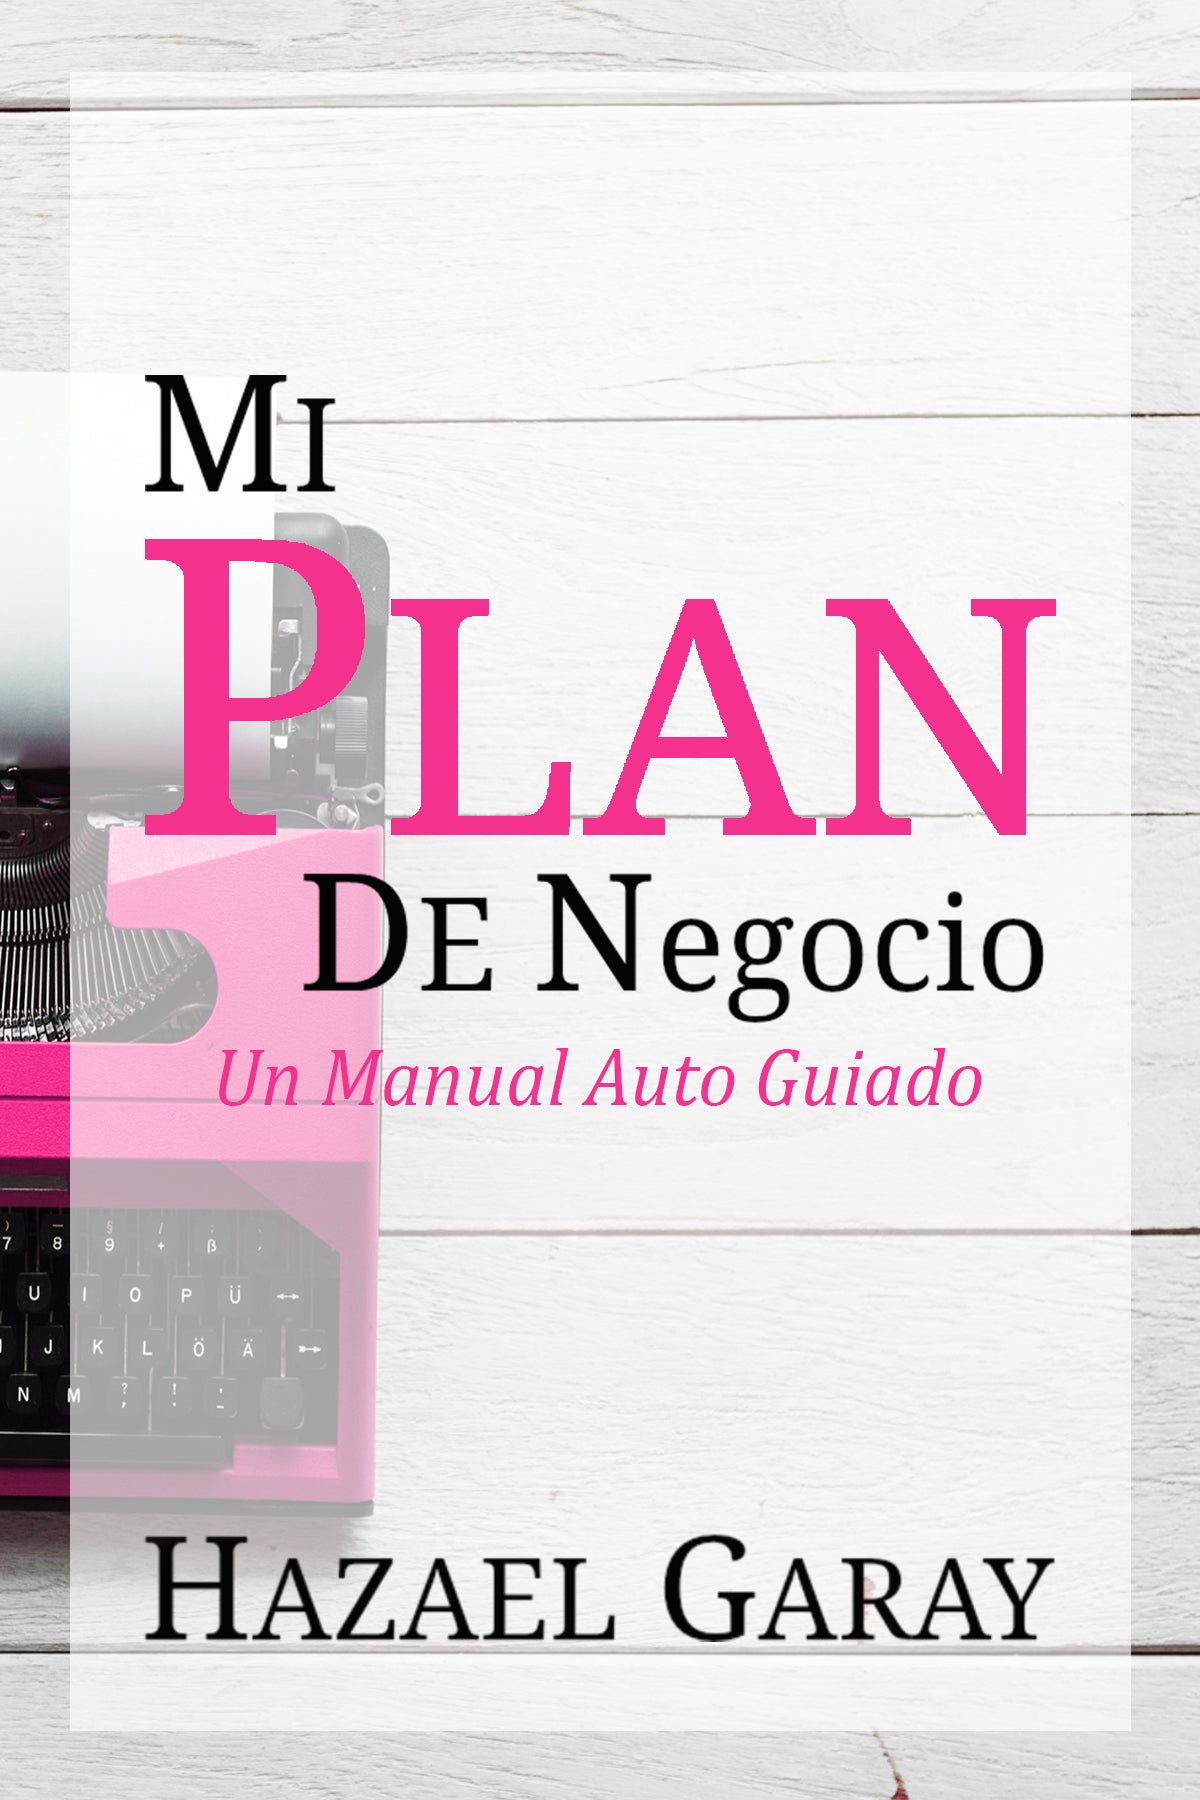 Compra Mi Plan de Negocio - Manual Auto Guiado en Hazael Garay - ¡Escala Tu Éxito Empresarial!